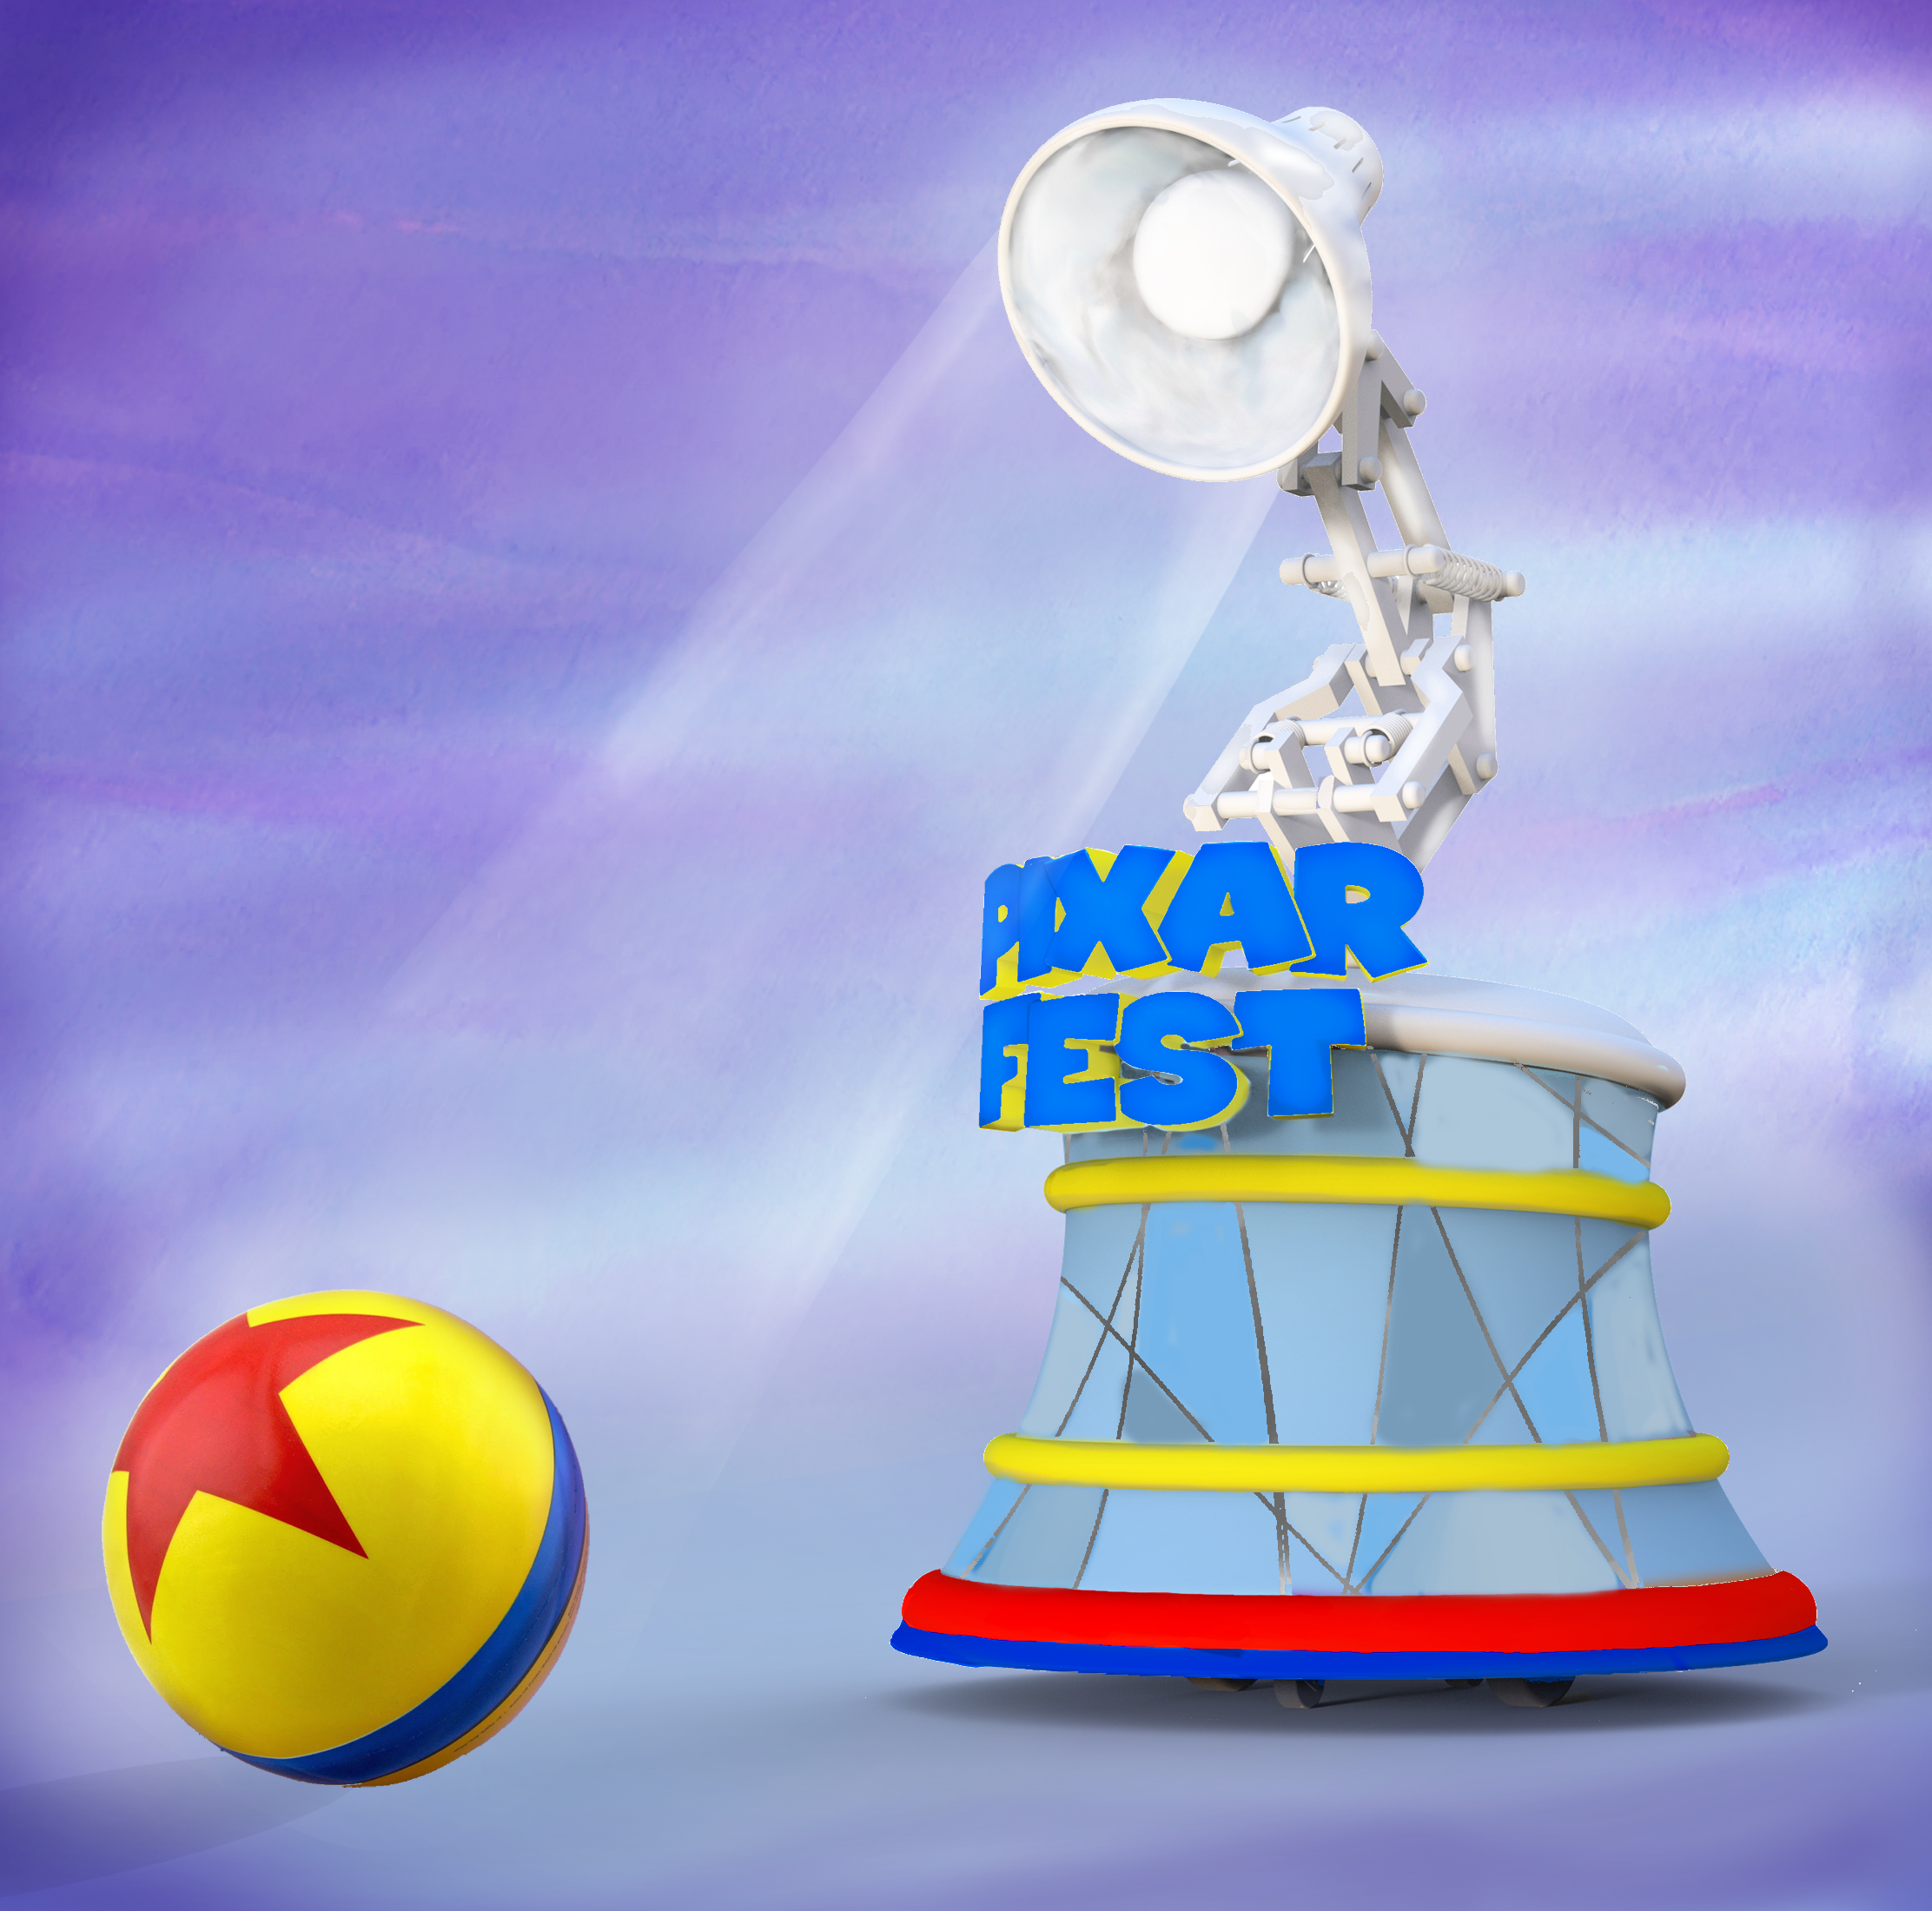 Como nos filmes, a Lâmpada da Pixar fará a abertura da parada.